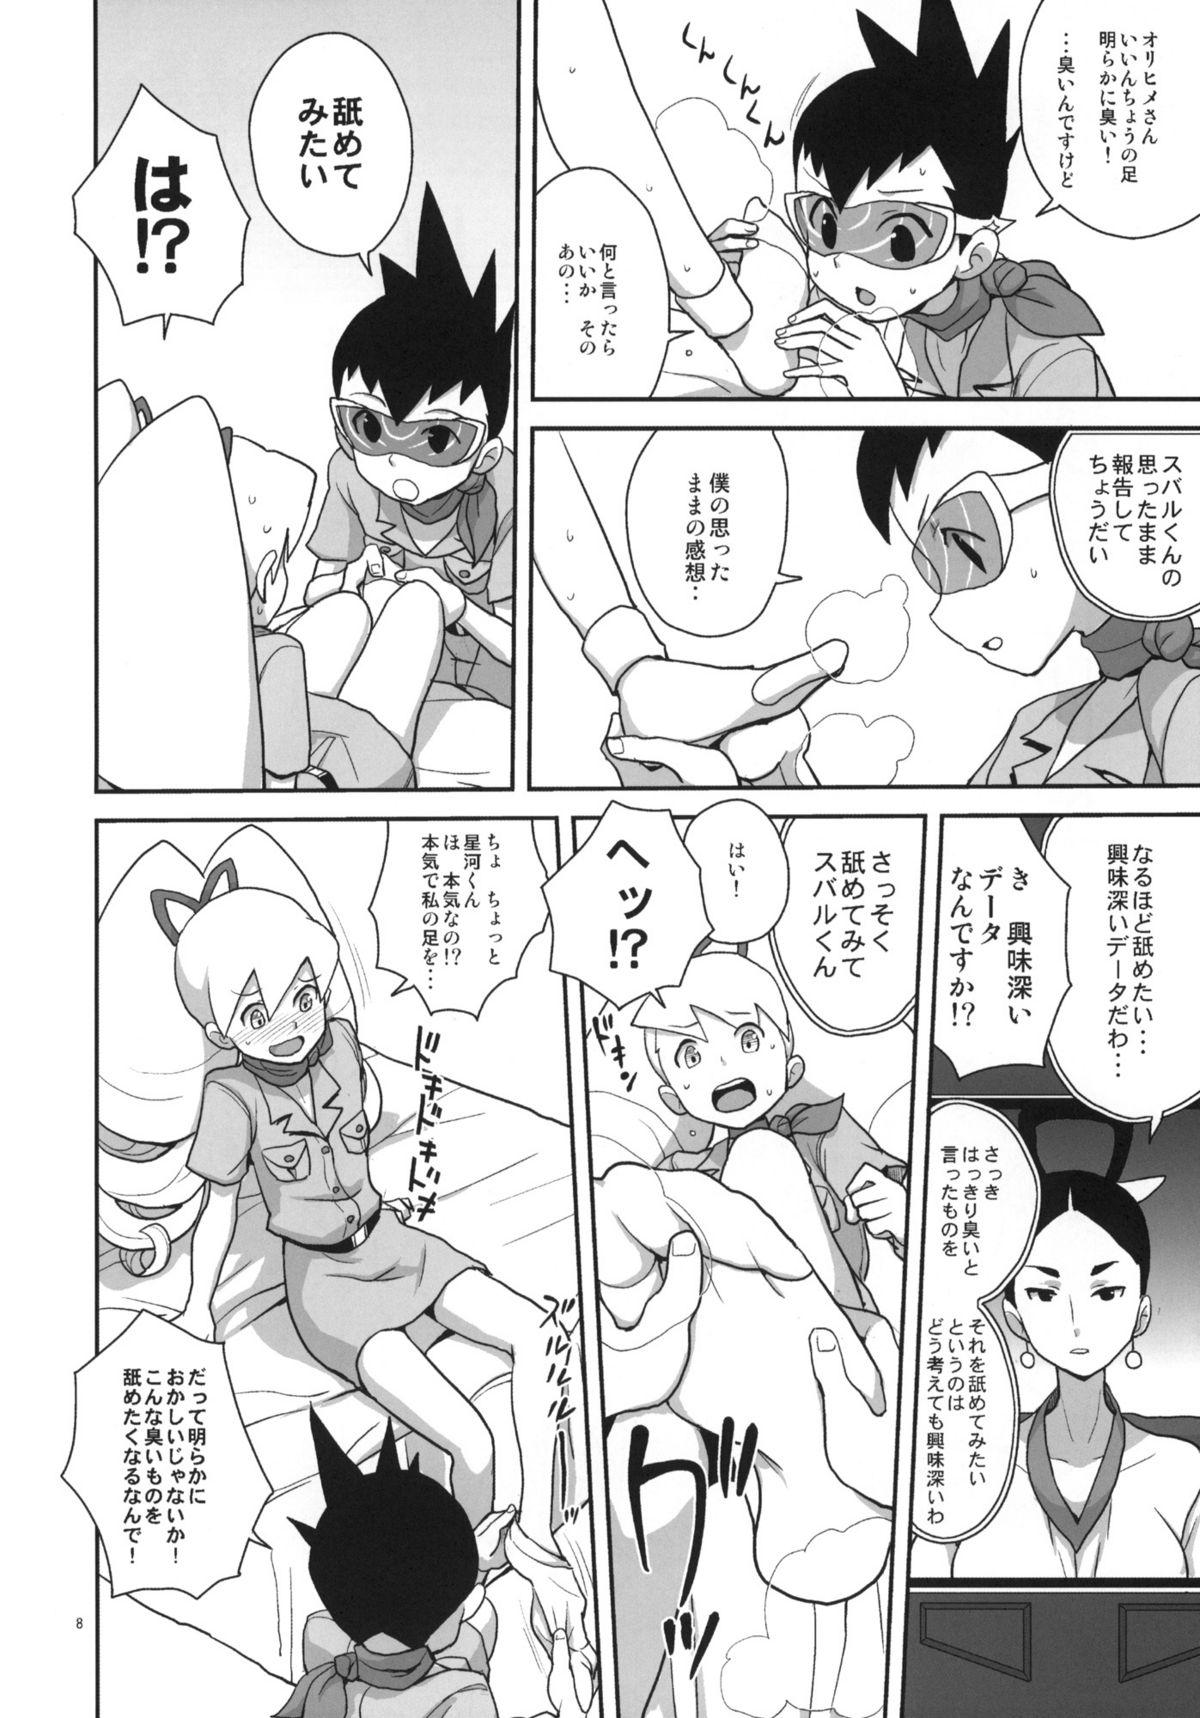 Perrito Ameroppa no Hikyou ni Densetsu no Ooparts wo Mita! - Megaman Mega man star force Big Dicks - Page 7